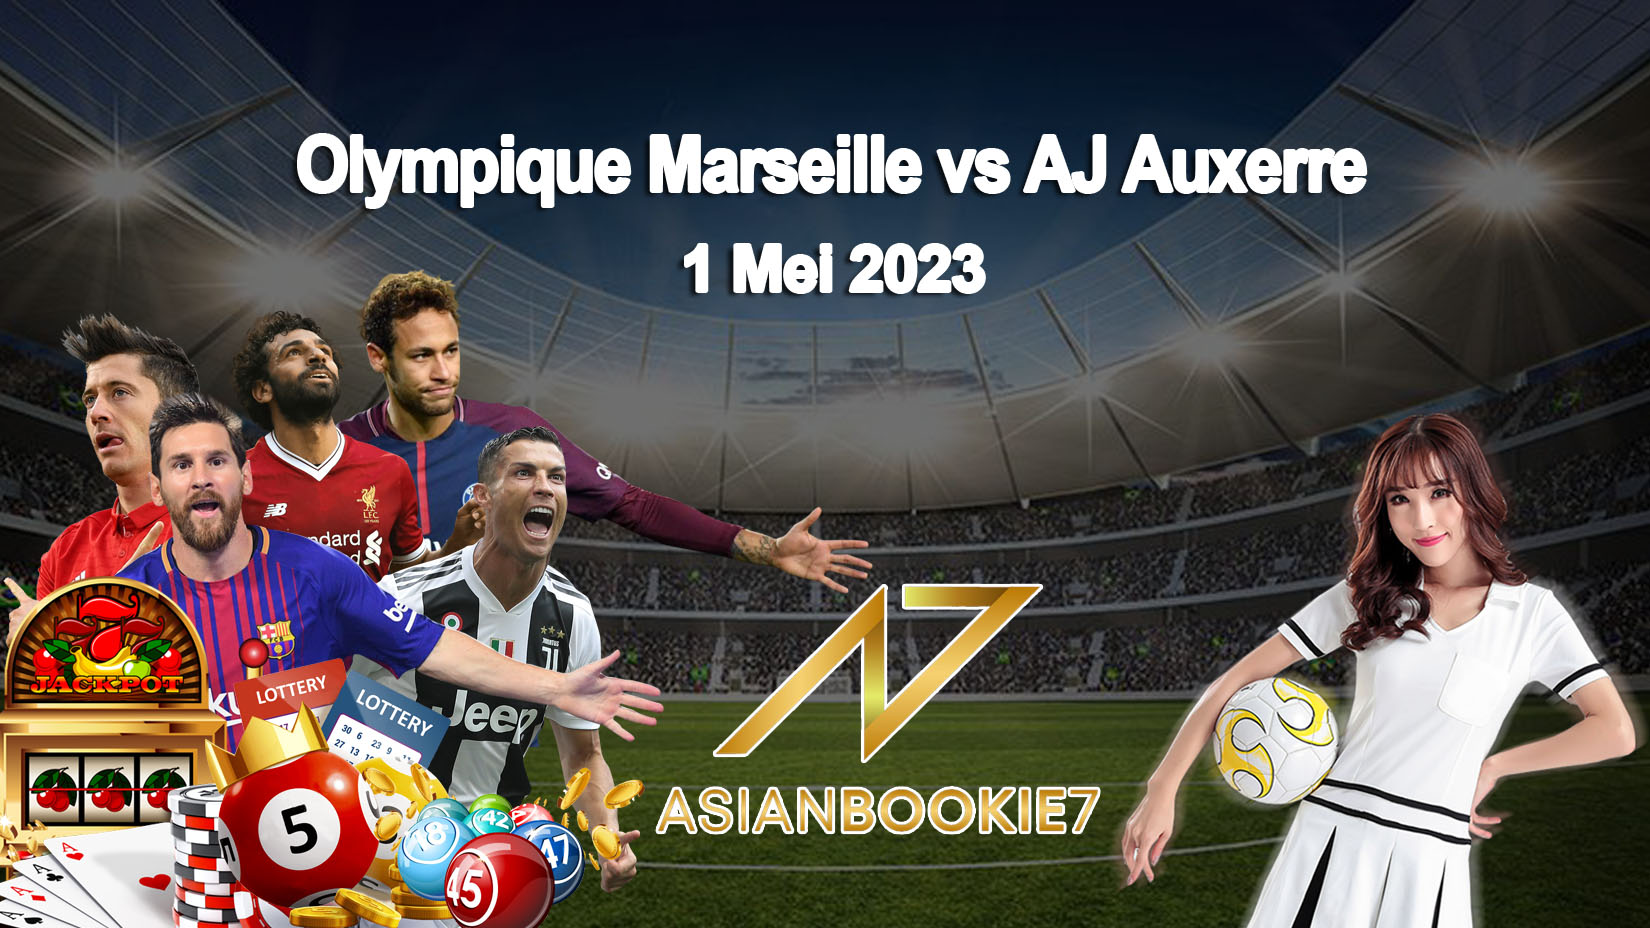 Prediksi Olympique Marseille vs AJ Auxerre 1 Mei 2023